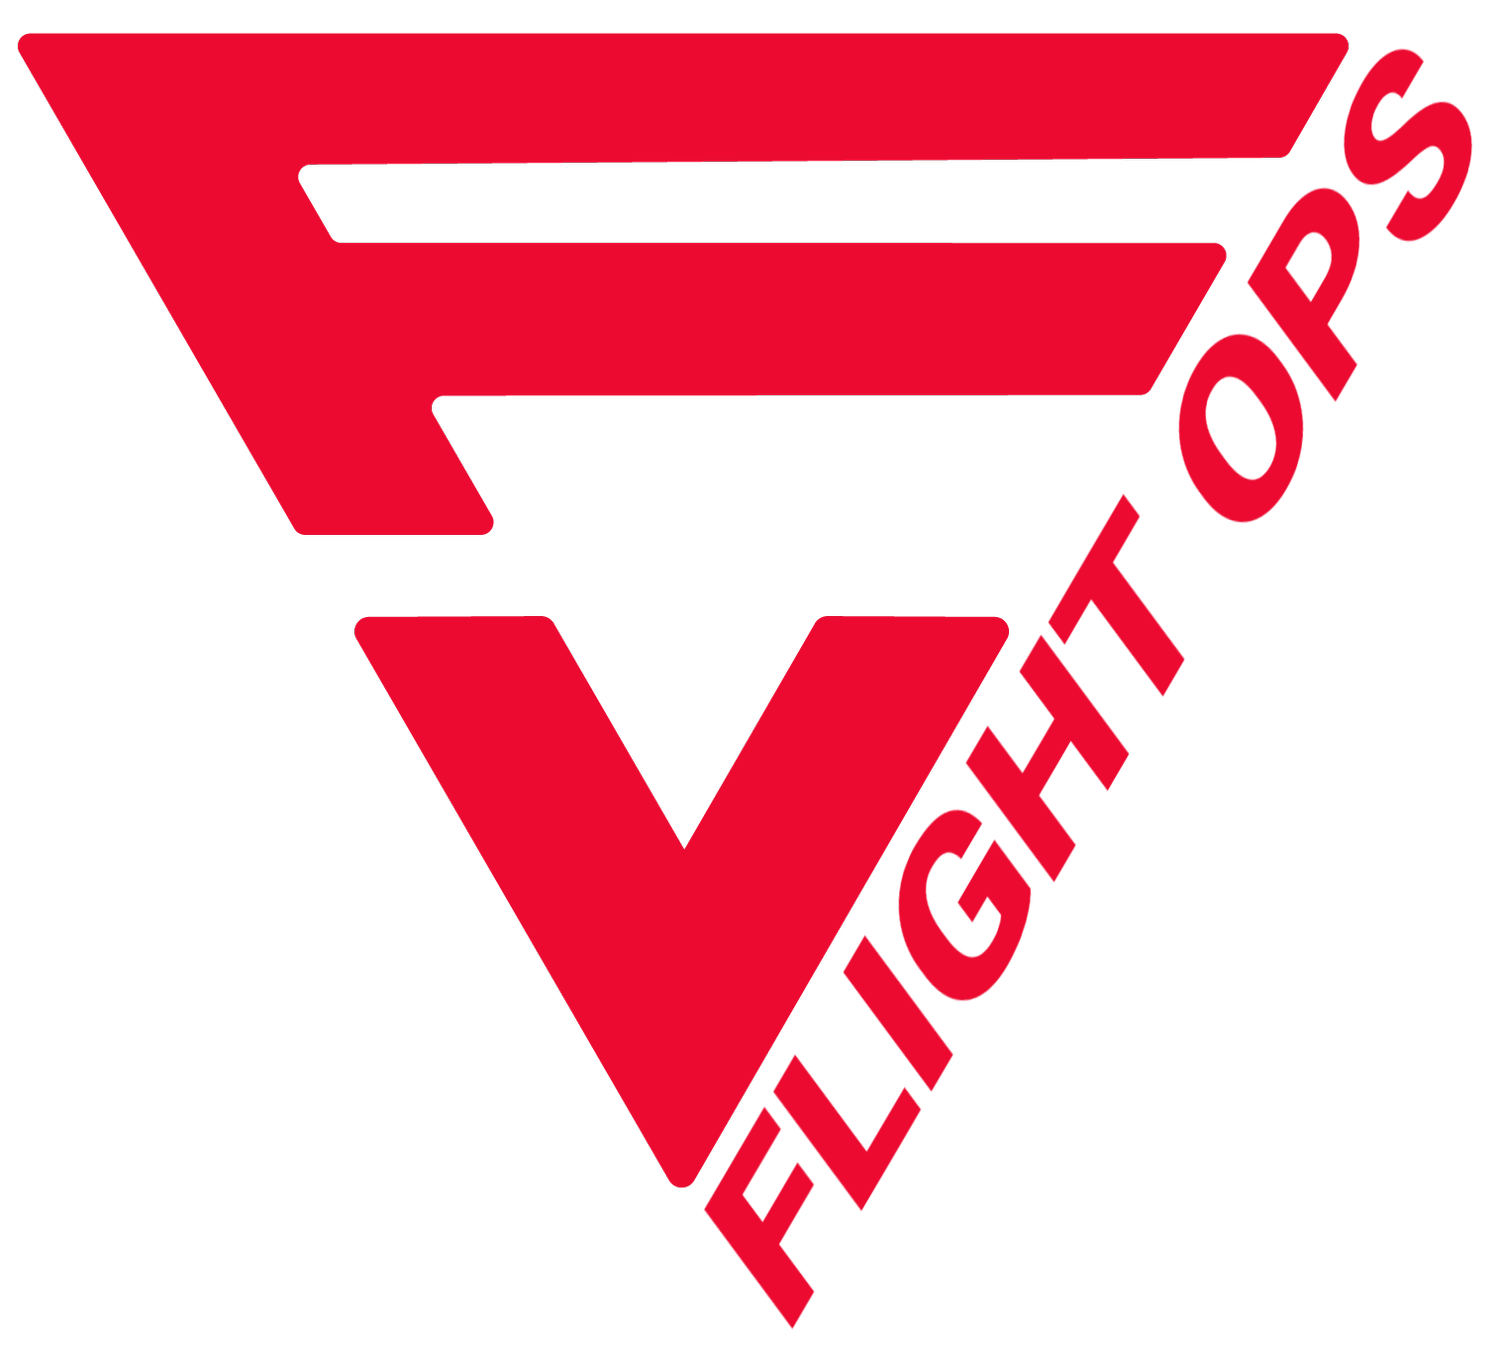 FV Flight Operations